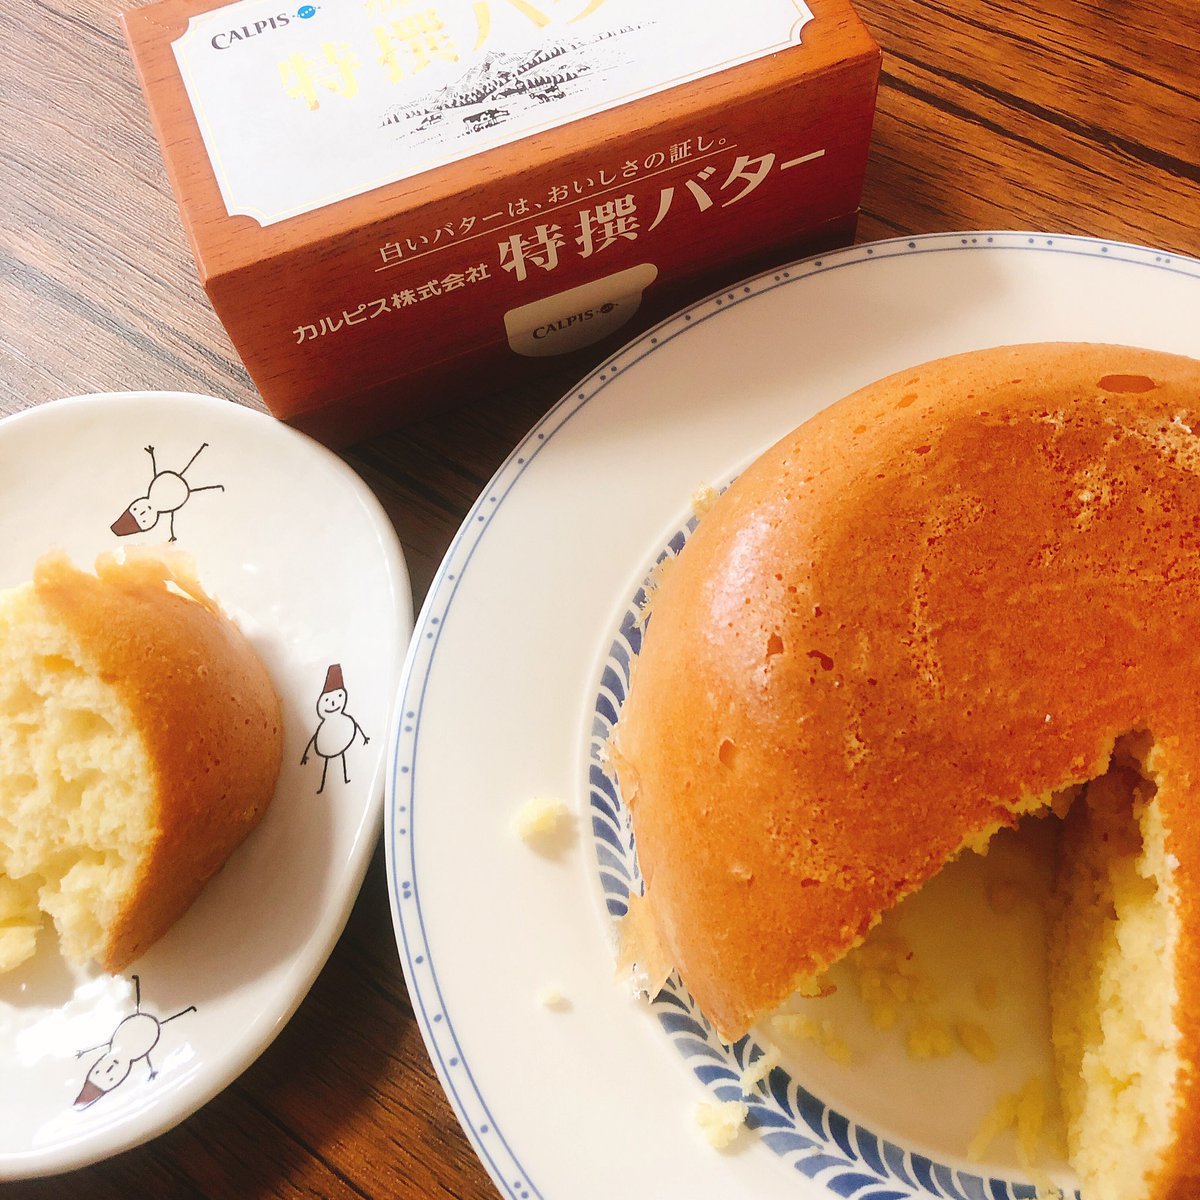 カワハラ恋 未熟8巻発売中 على تويتر 憧れのカルピスバター買ったよおおおお使うために炊飯器ホットケーキ焼いた